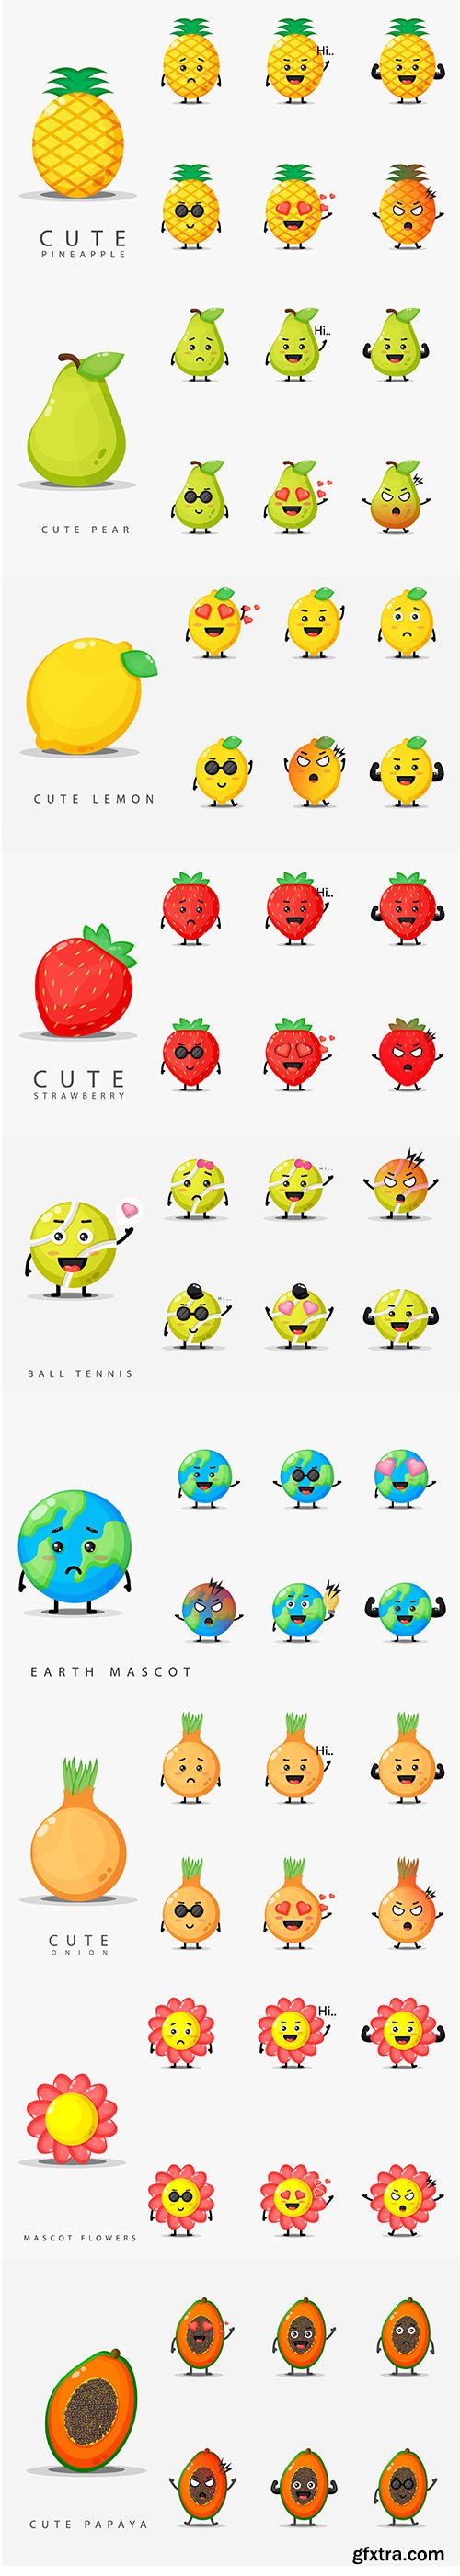 Set Of Cute Face Mascot Design